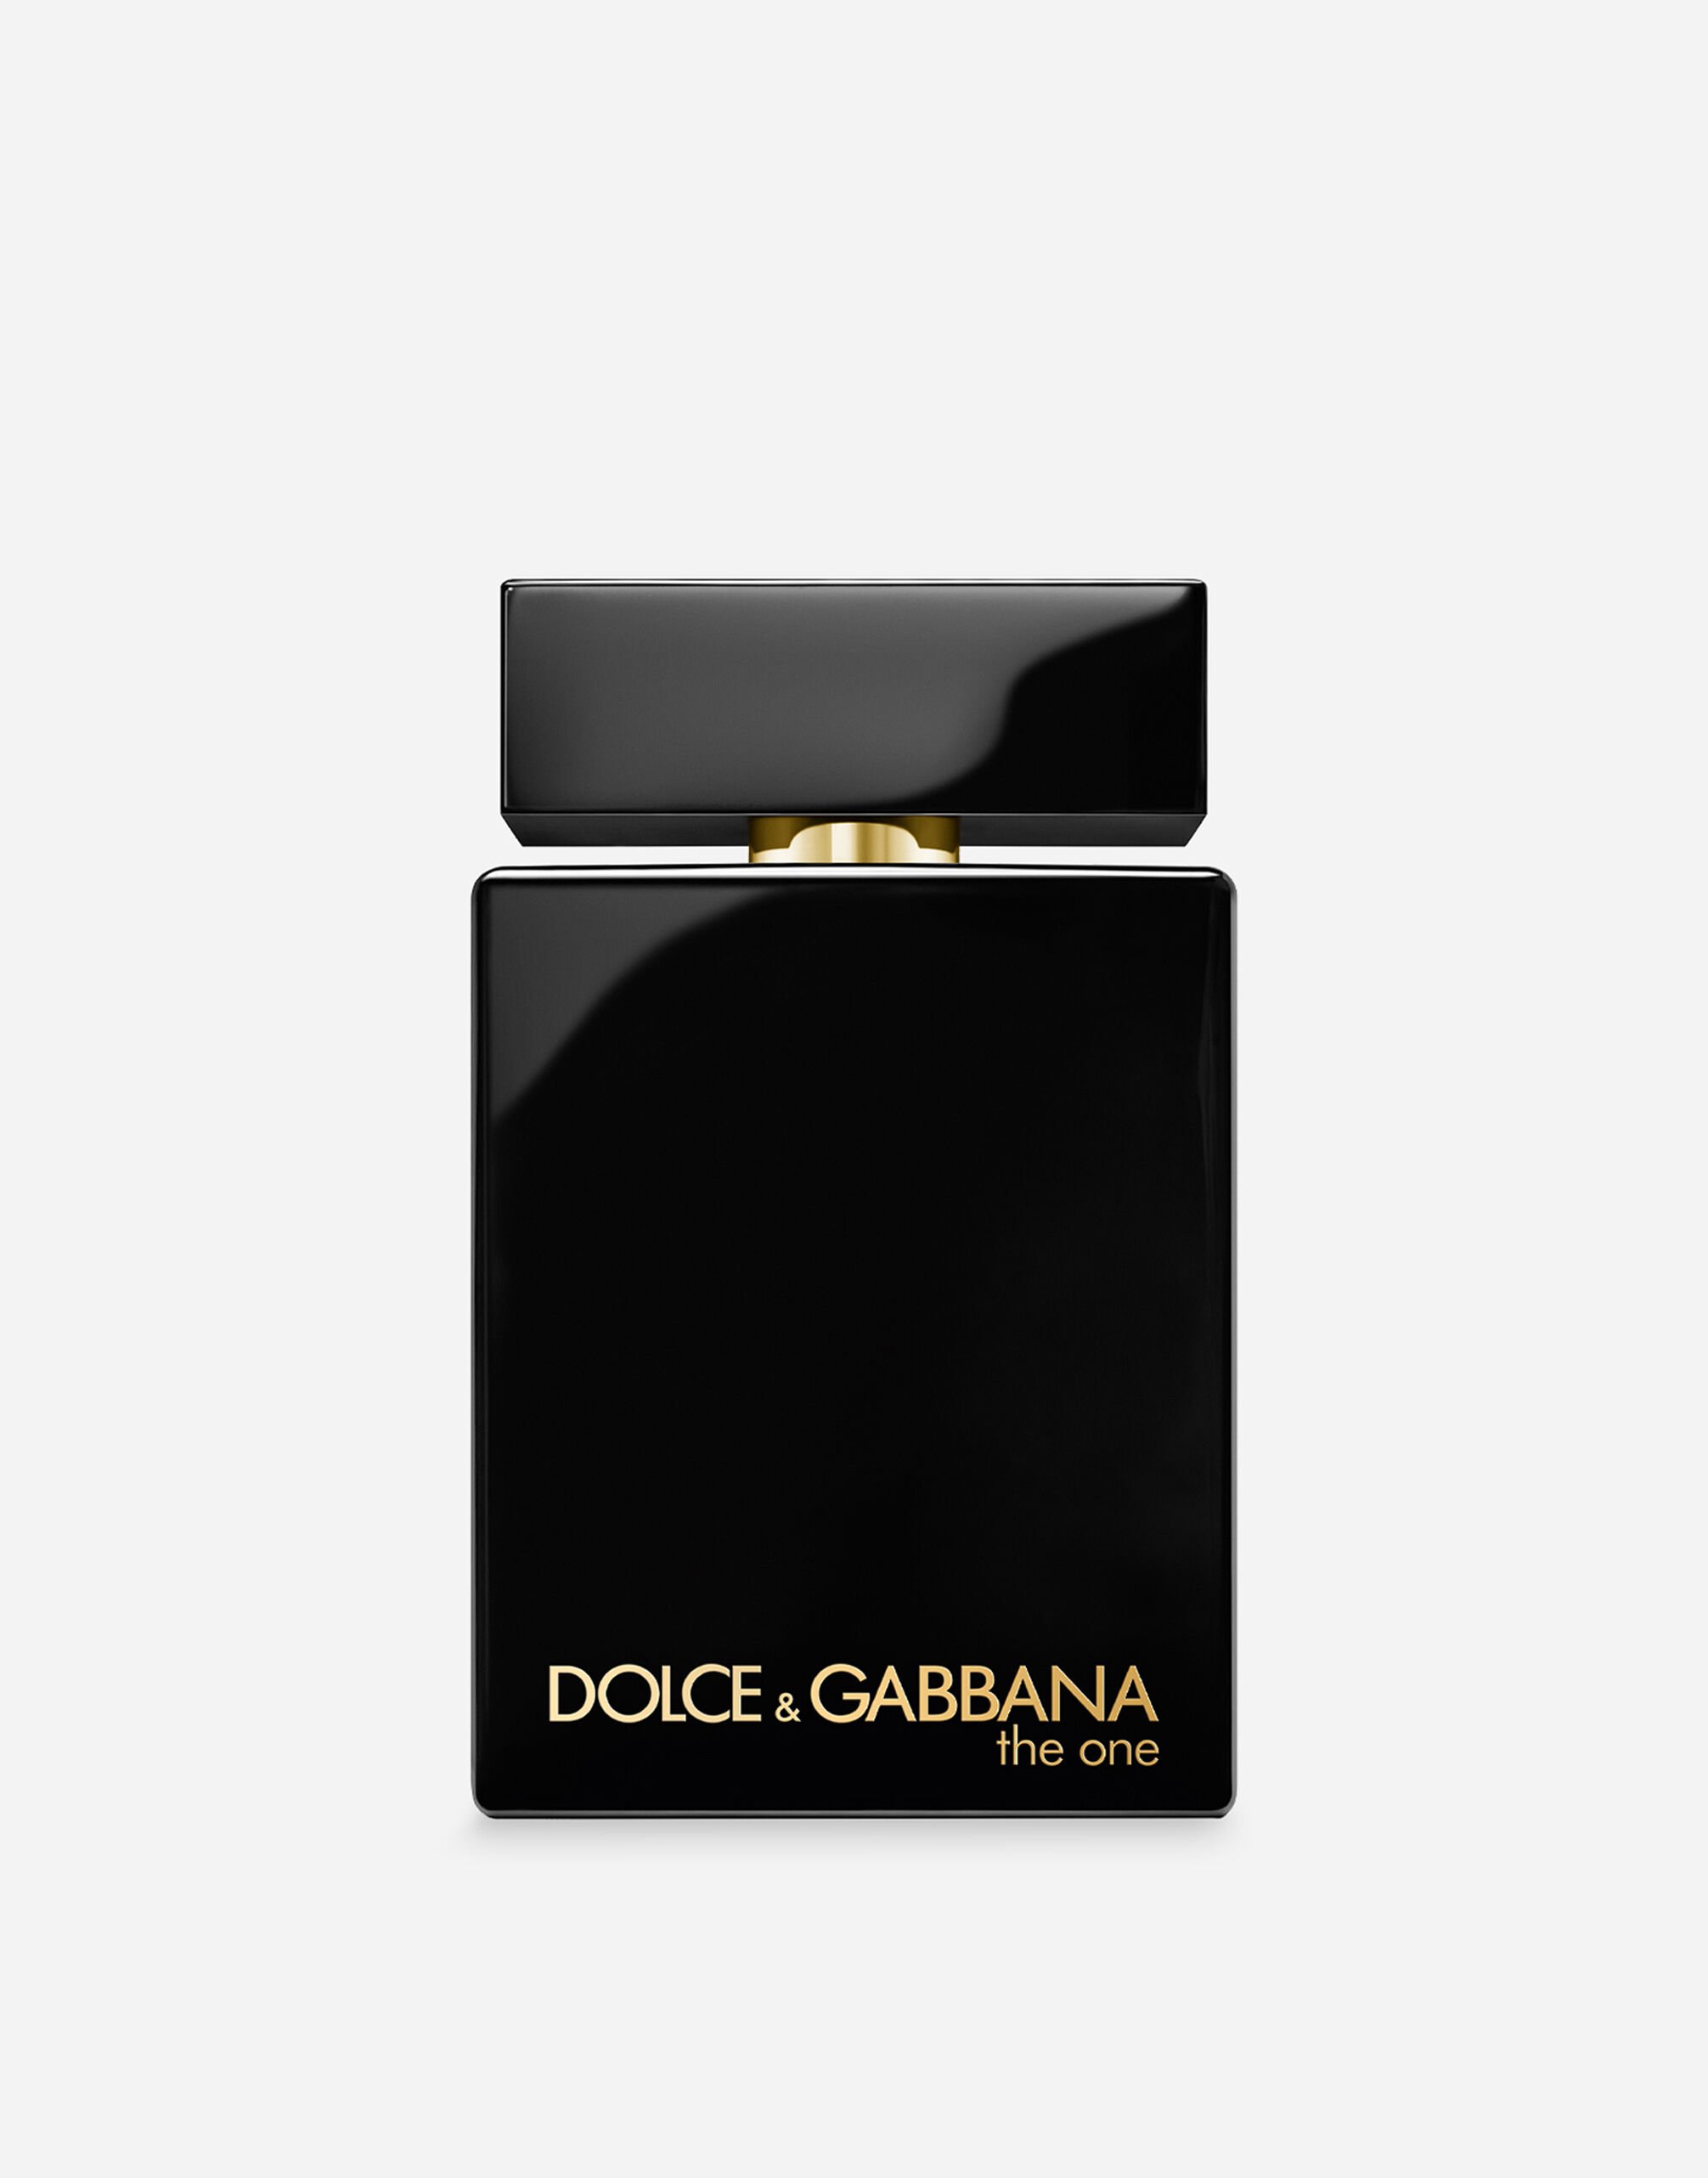 Dolce & Gabbana The One for Men Eau de Parfum Intense - VT00LRVT000